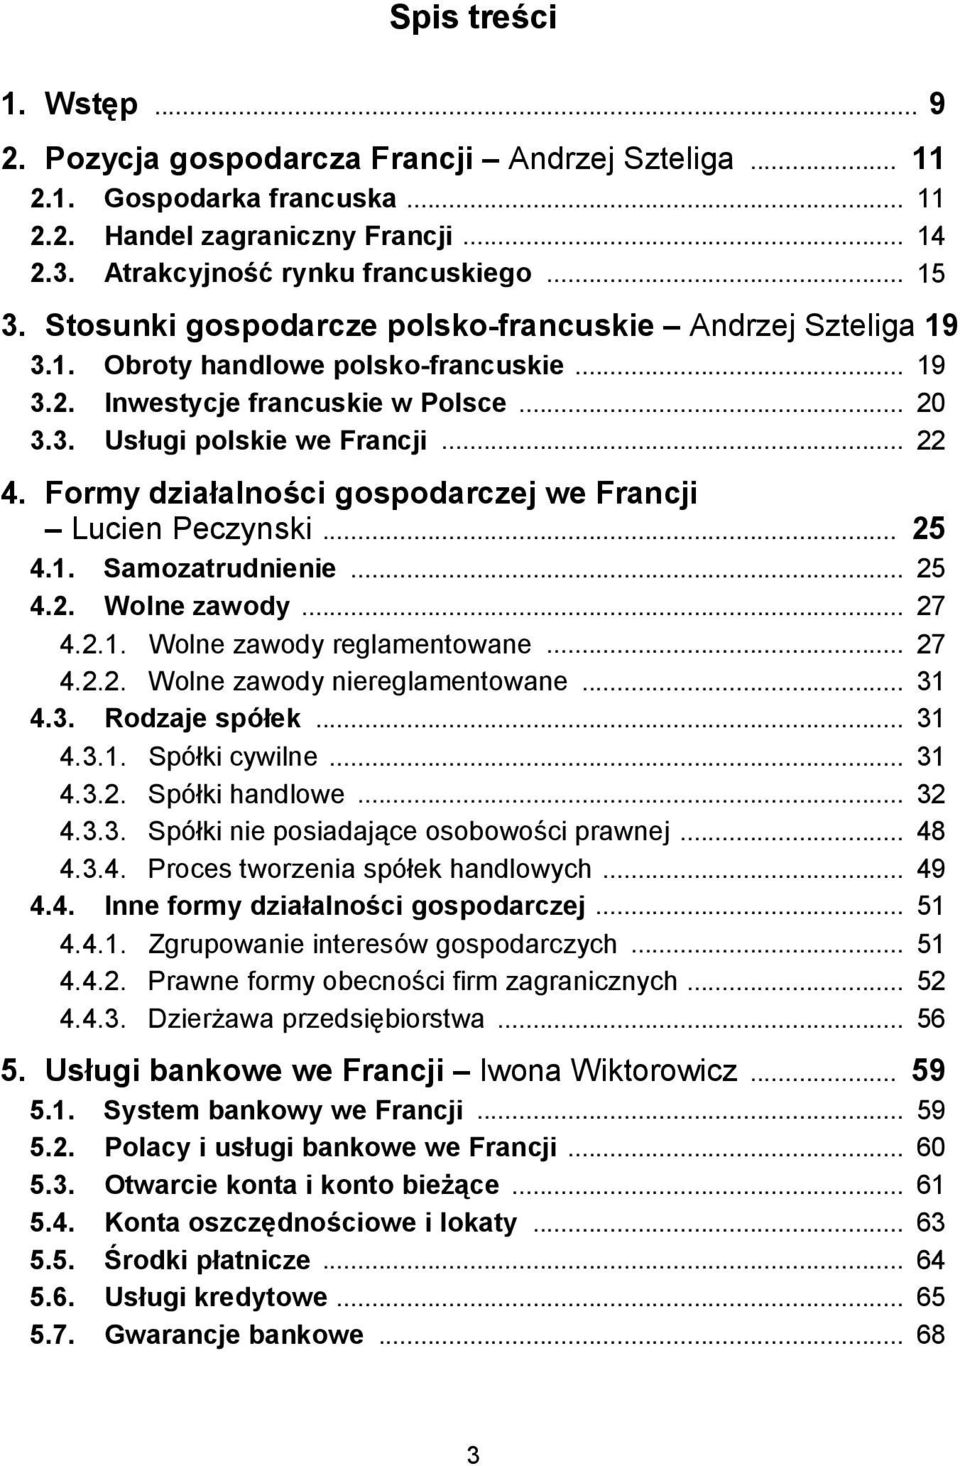 Formy działalności gospodarczej we Francji Lucien Peczynski... 25 4.1. Samozatrudnienie... 25 4.2. Wolne zawody... 27 4.2.1. Wolne zawody reglamentowane... 27 4.2.2. Wolne zawody niereglamentowane.